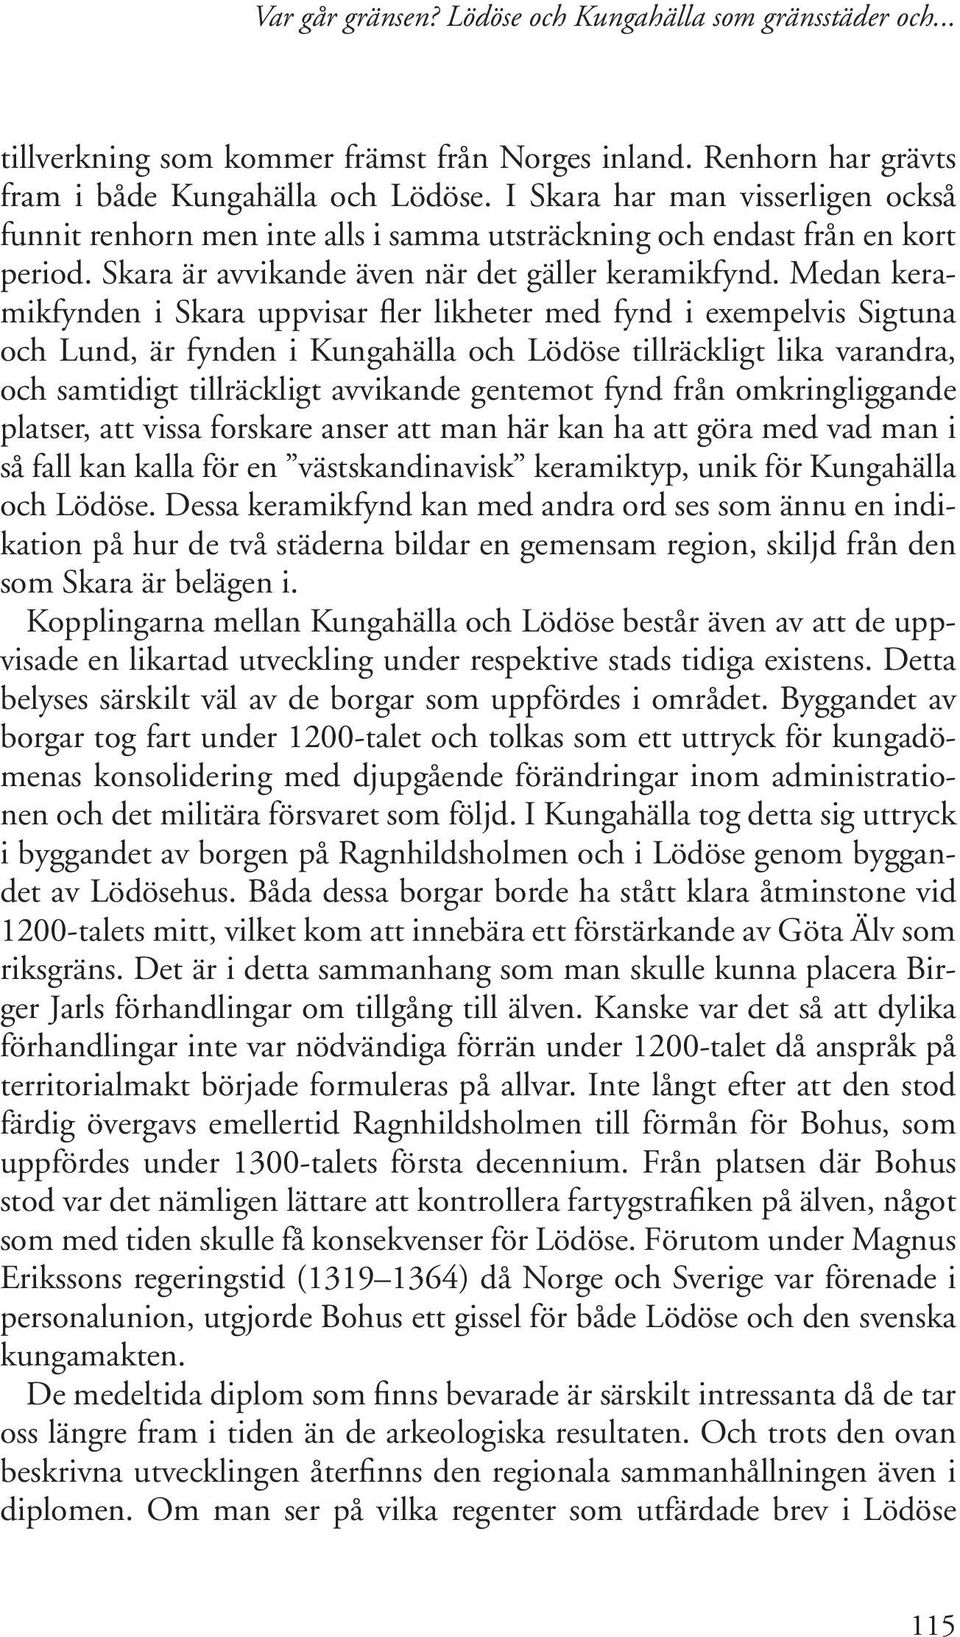 Medan keramikfynden i Skara uppvisar fler likheter med fynd i exempelvis Sigtuna och Lund, är fynden i Kungahälla och Lödöse tillräckligt lika varandra, och samtidigt tillräckligt avvikande gentemot